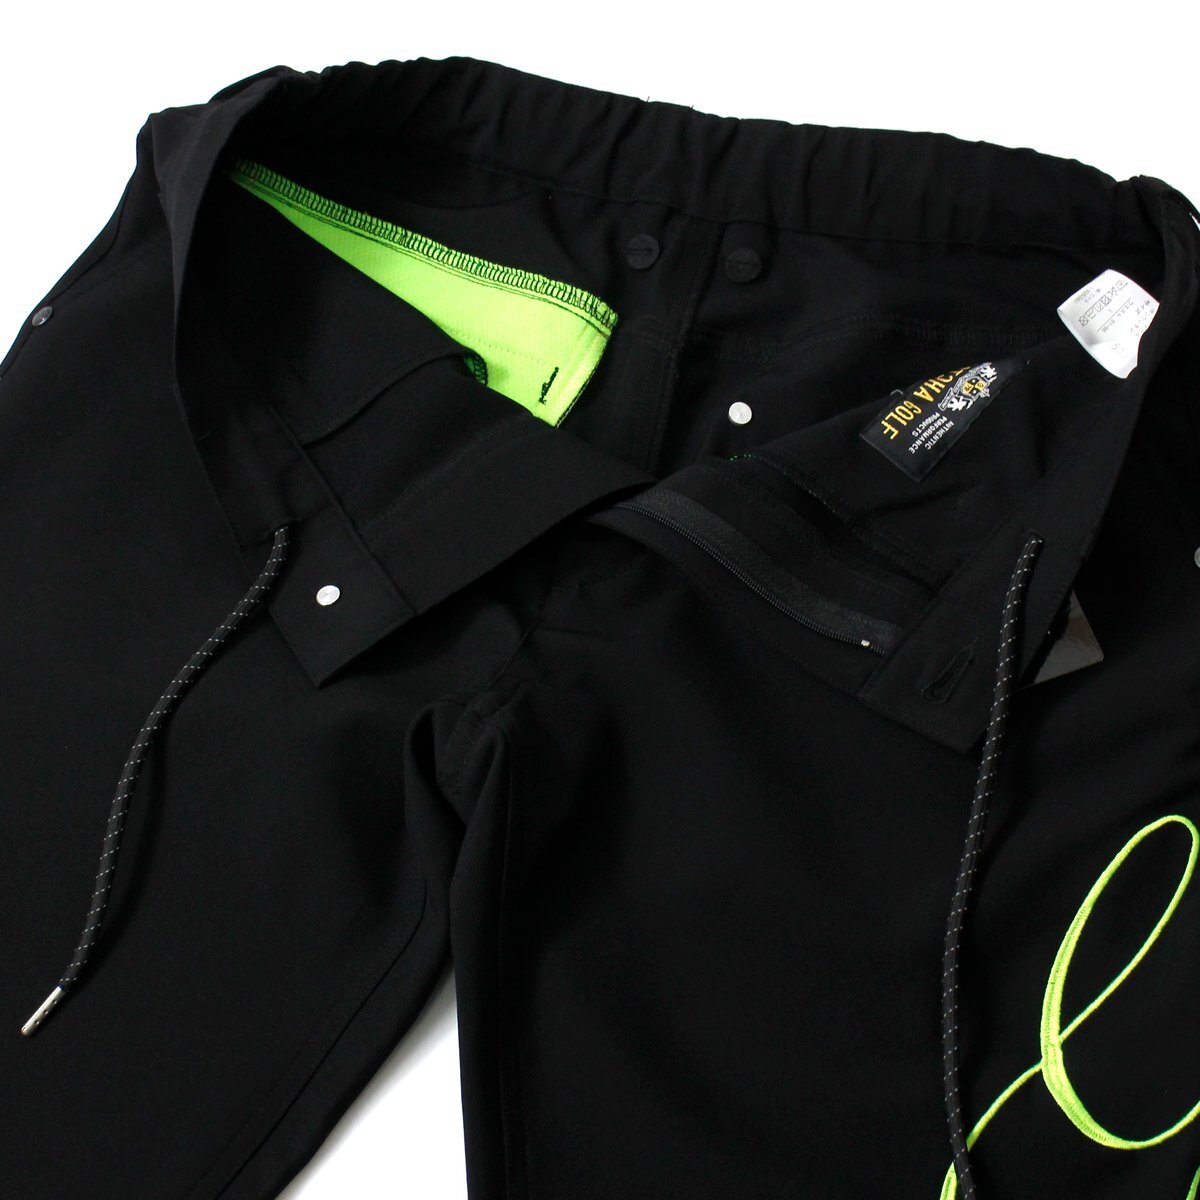  новый товар Gotcha Golf 4way стрейч водоотталкивающий длинные брюки XXL весна лето GOTCHA GOLF низ мужской одежда .. вышивка чёрный *CG2313C